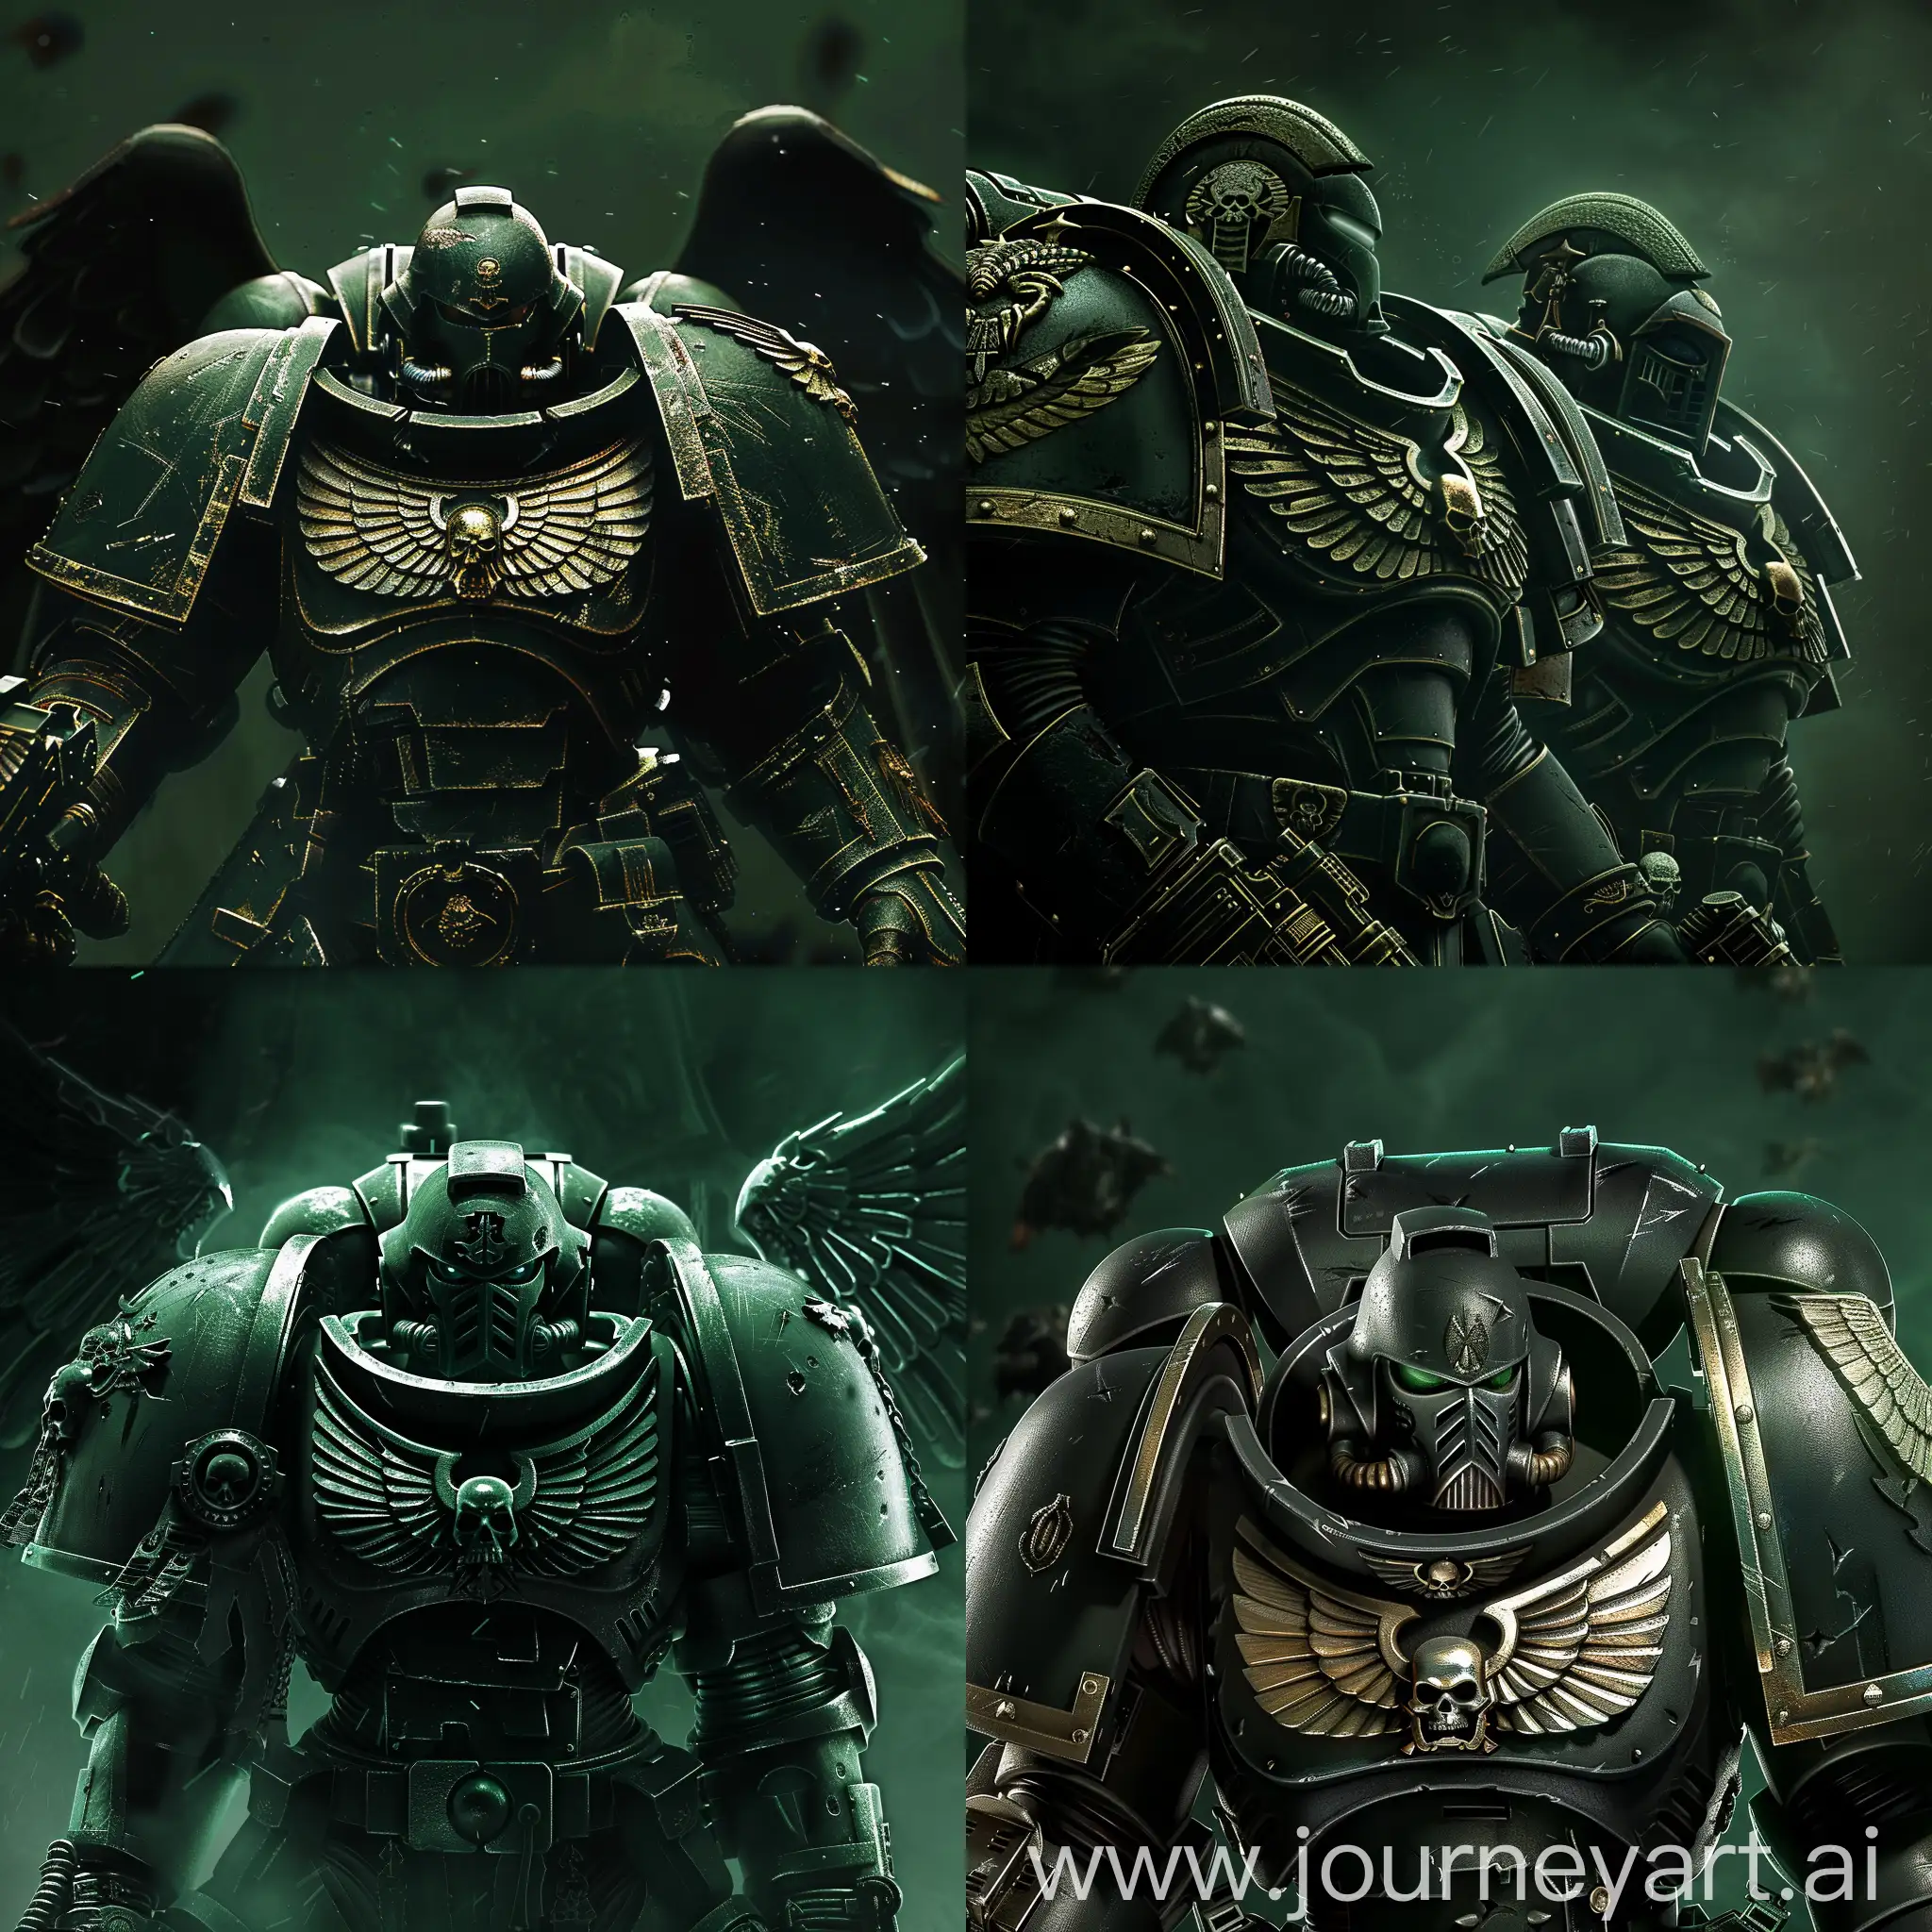 Dark-Angels-Battle-Formation-in-Warhammer-40k-Dark-Green-Abyss